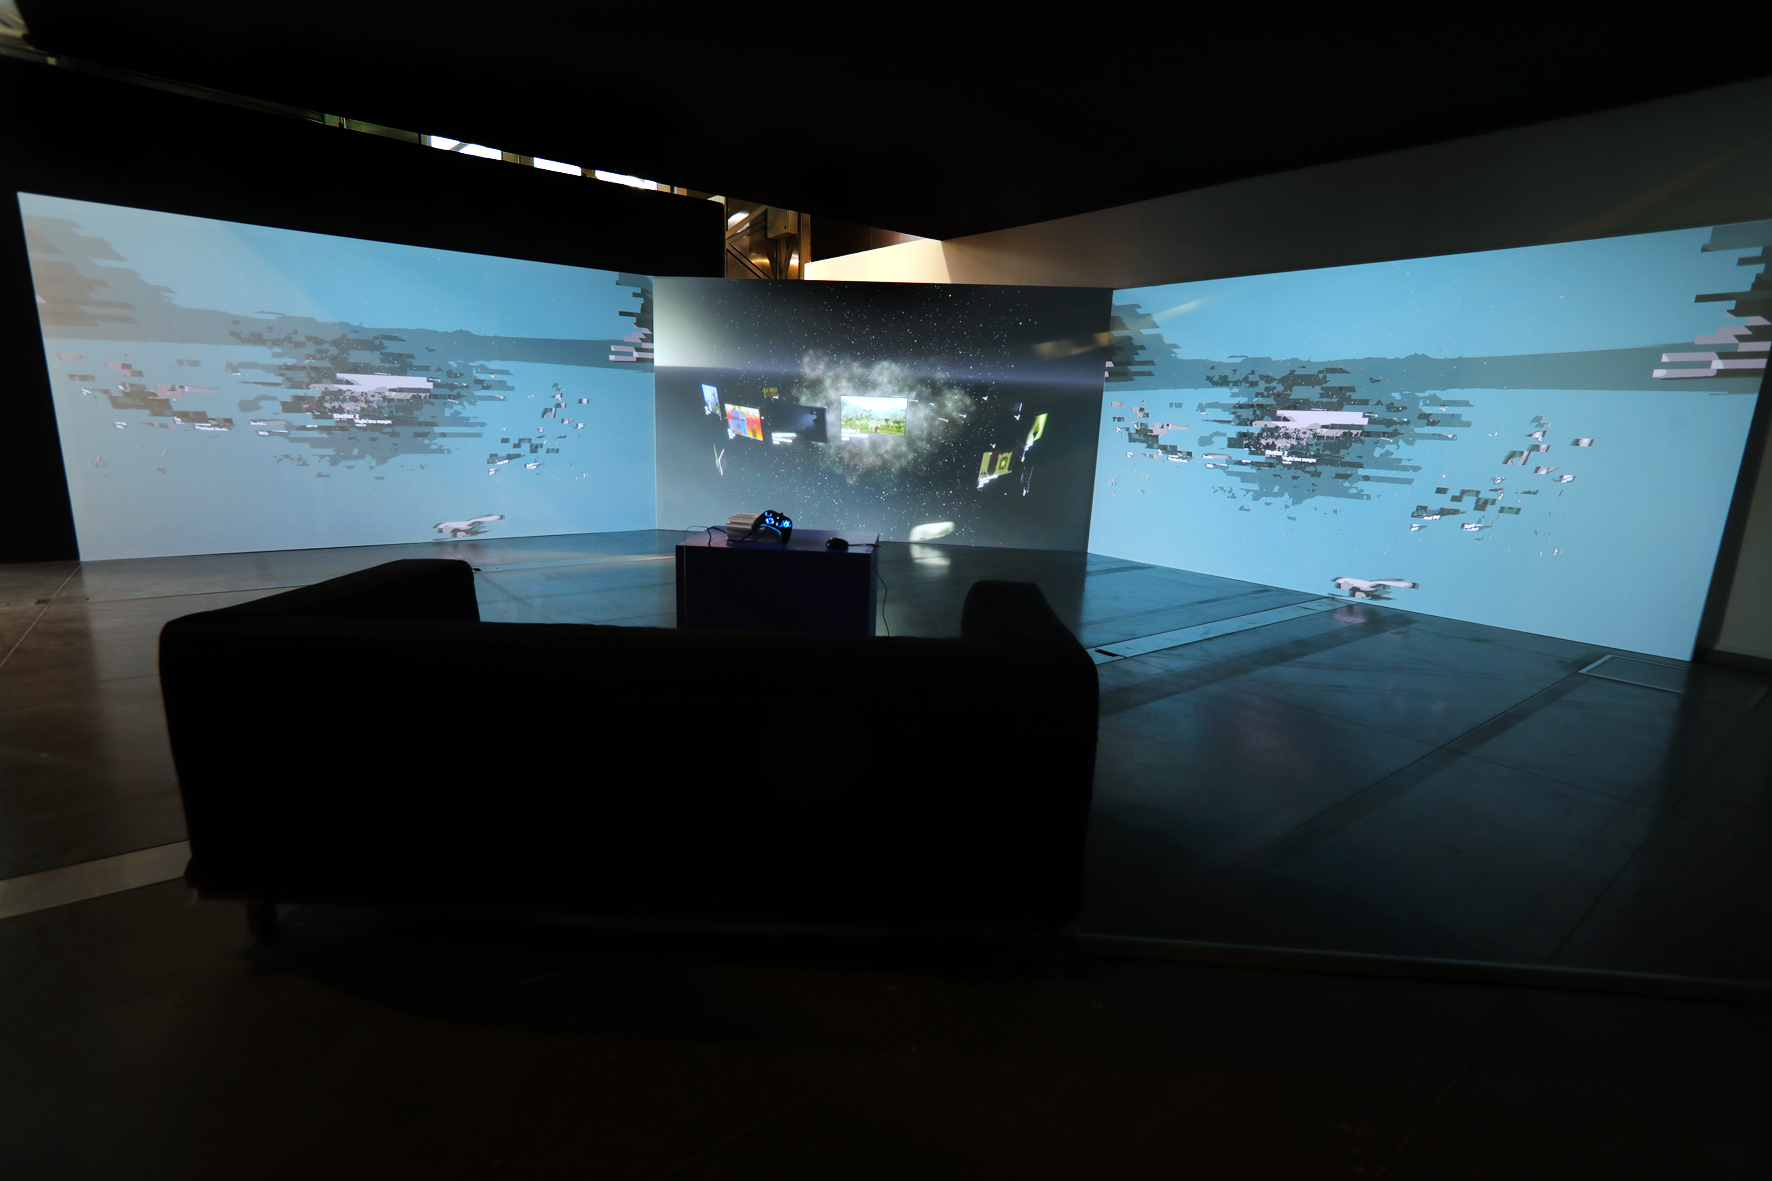 Indie games lounge, une installation proposée par le Random(lab)
Photo ©F.Roure